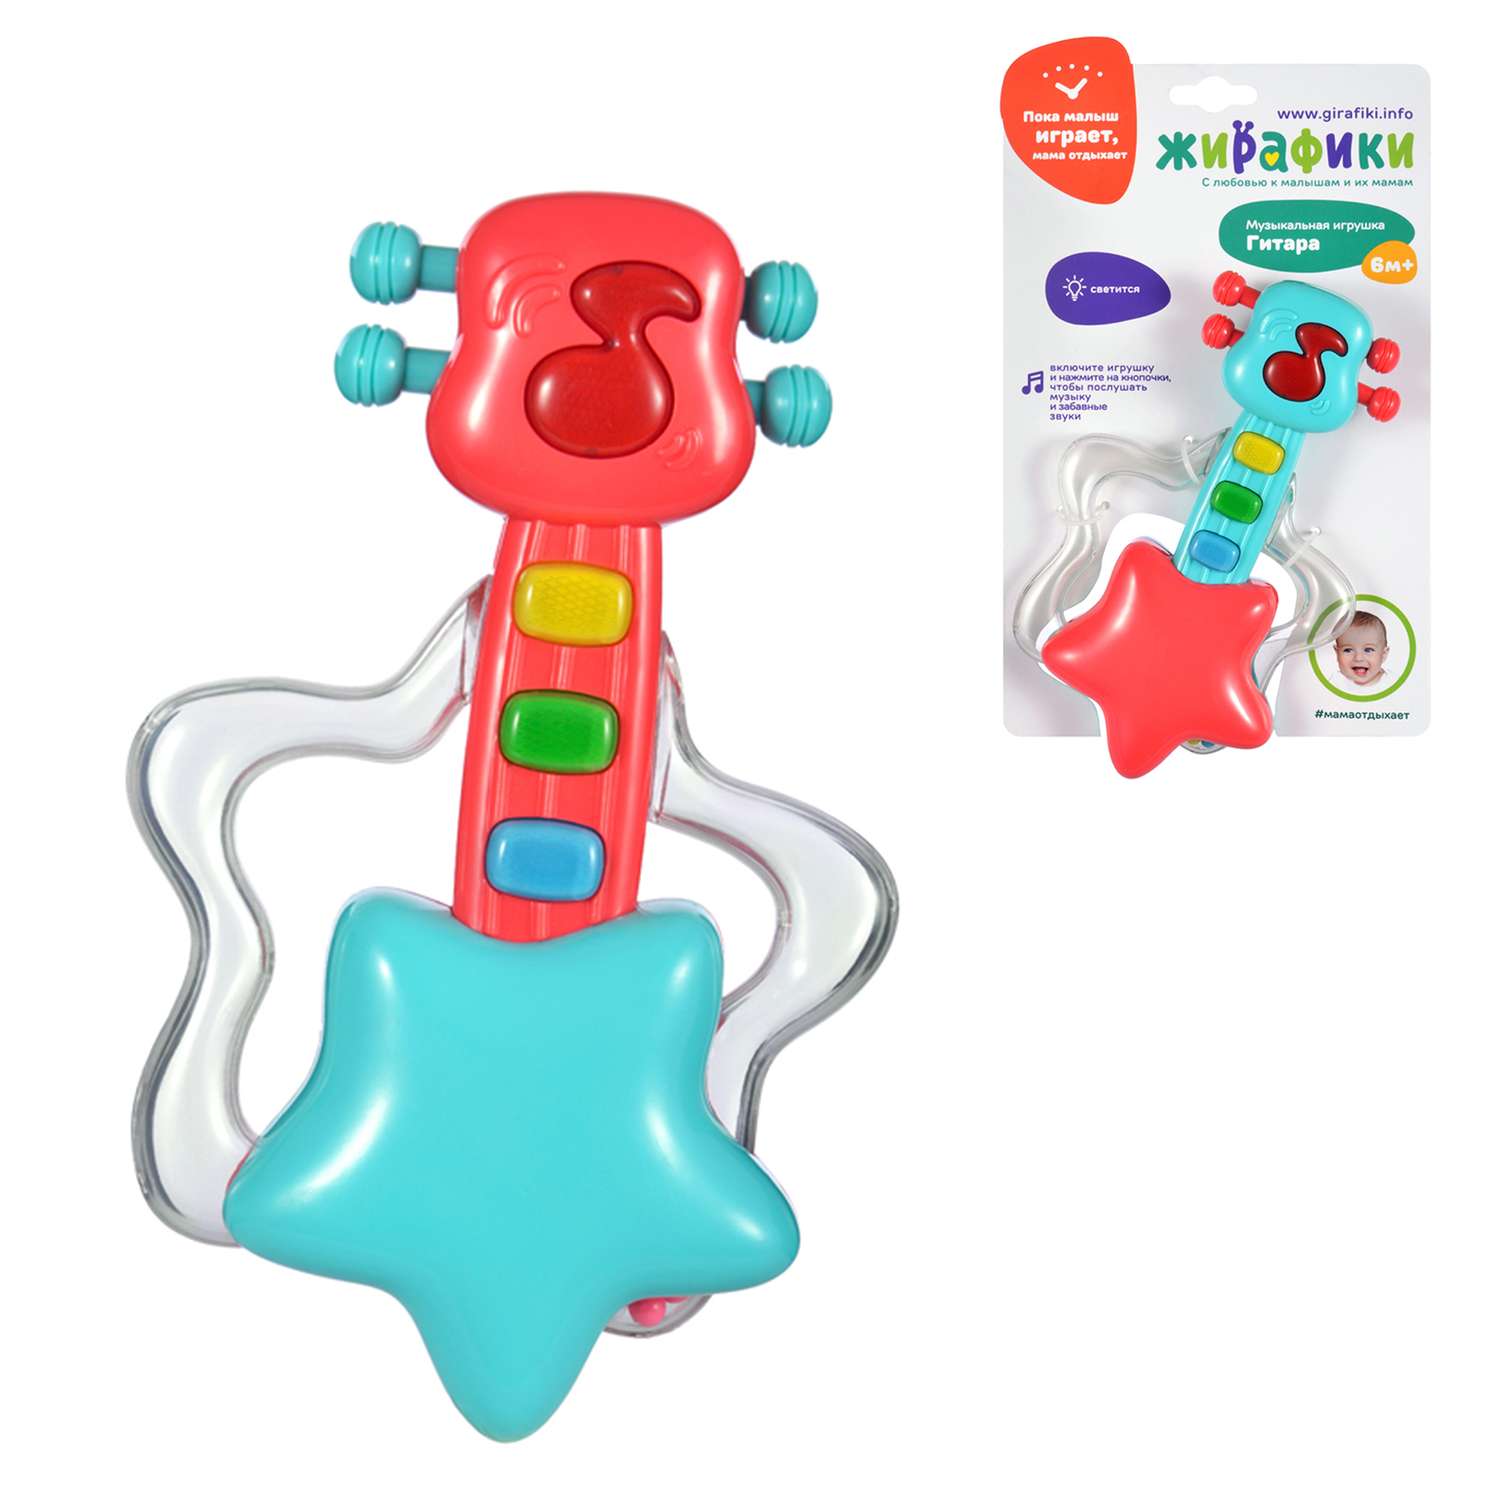 Музыкальная игрушка Жирафики Гитара со светом - фото 2